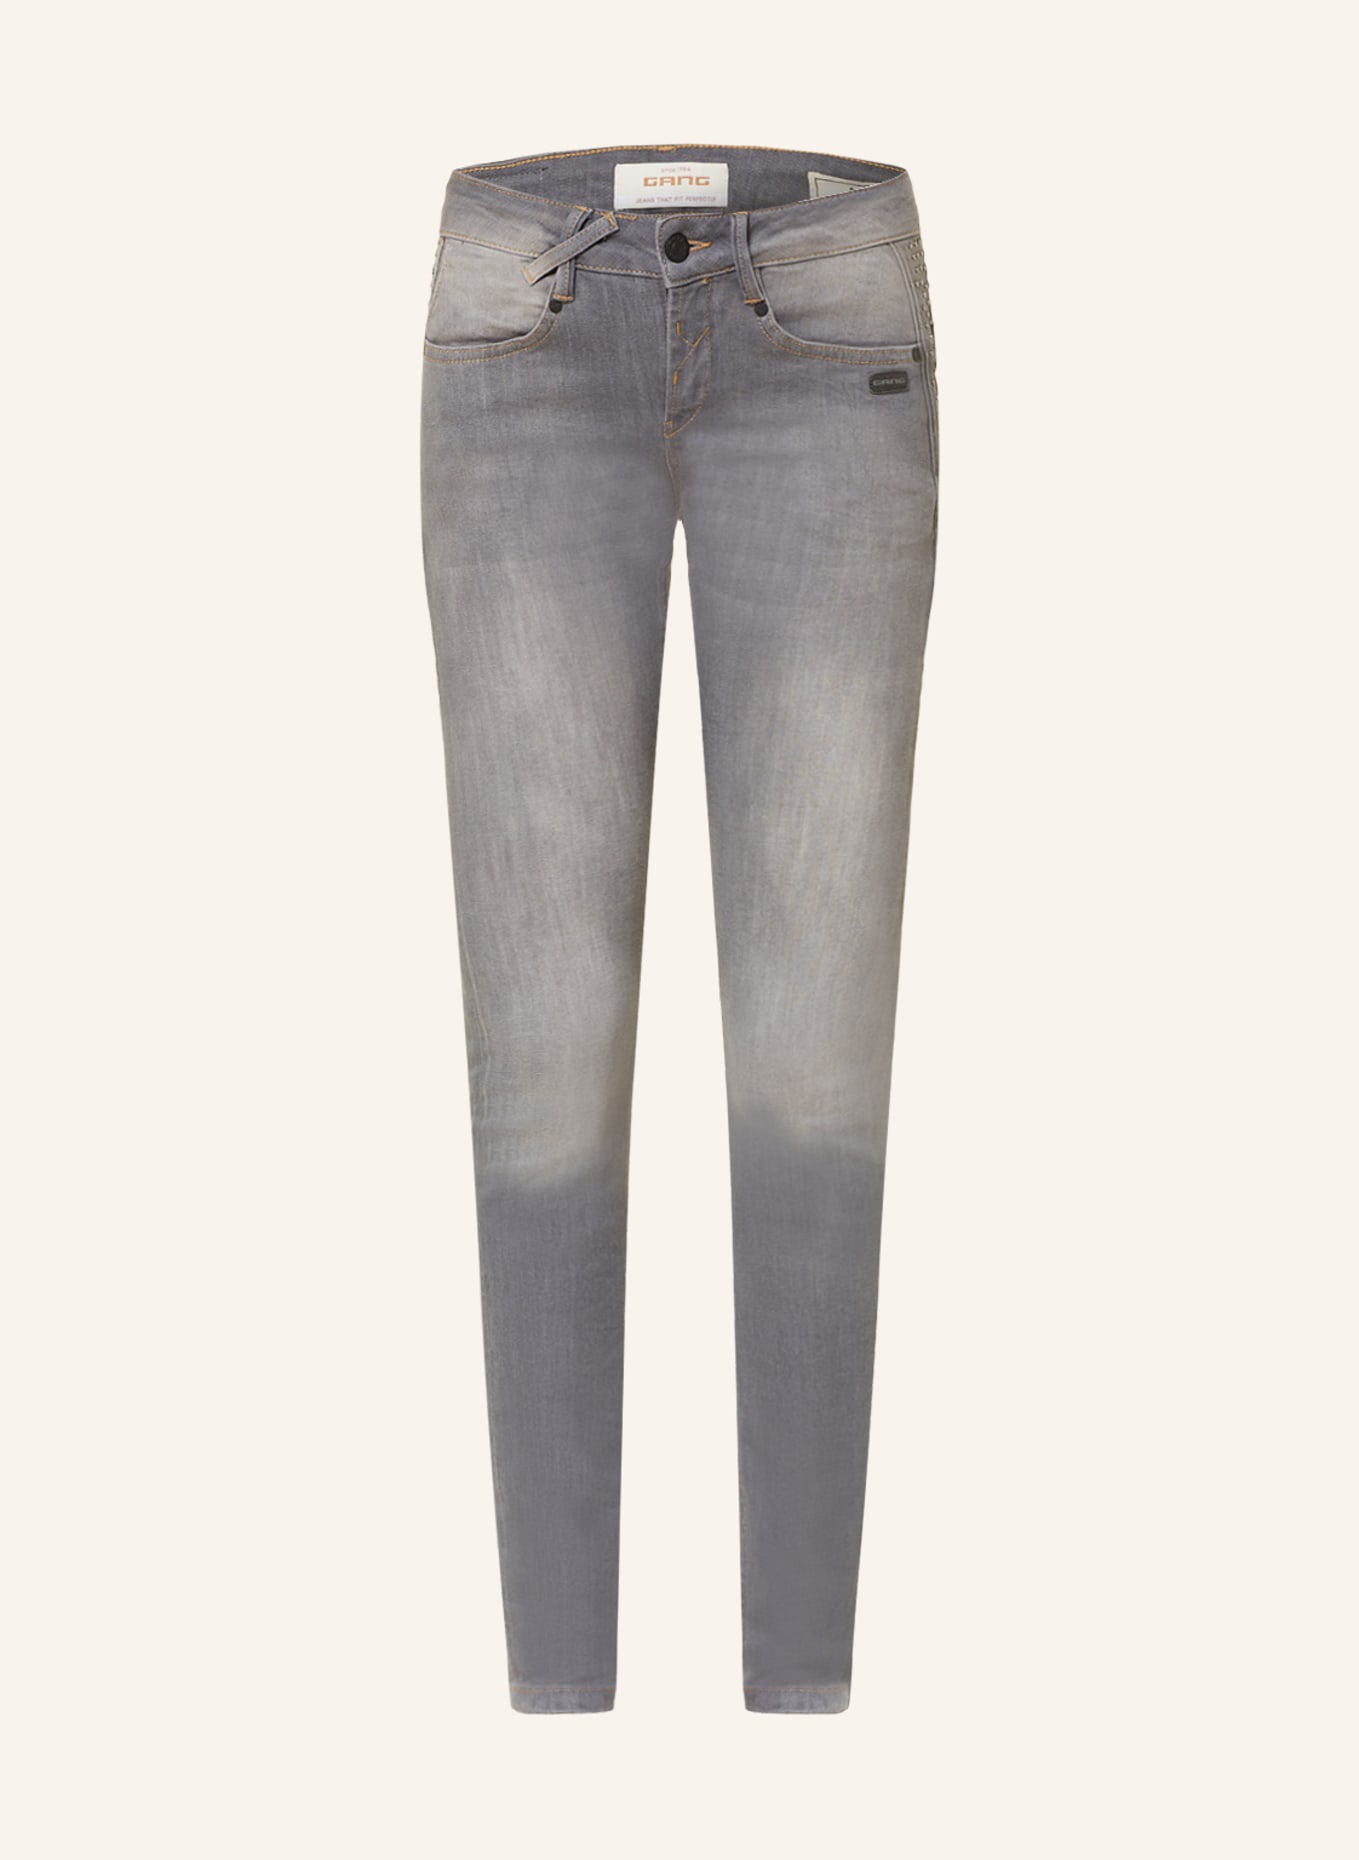 GANG Skinny Jeans NELE mit Schmucksteinen, Farbe: 7996 stared grey washed (Bild 1)